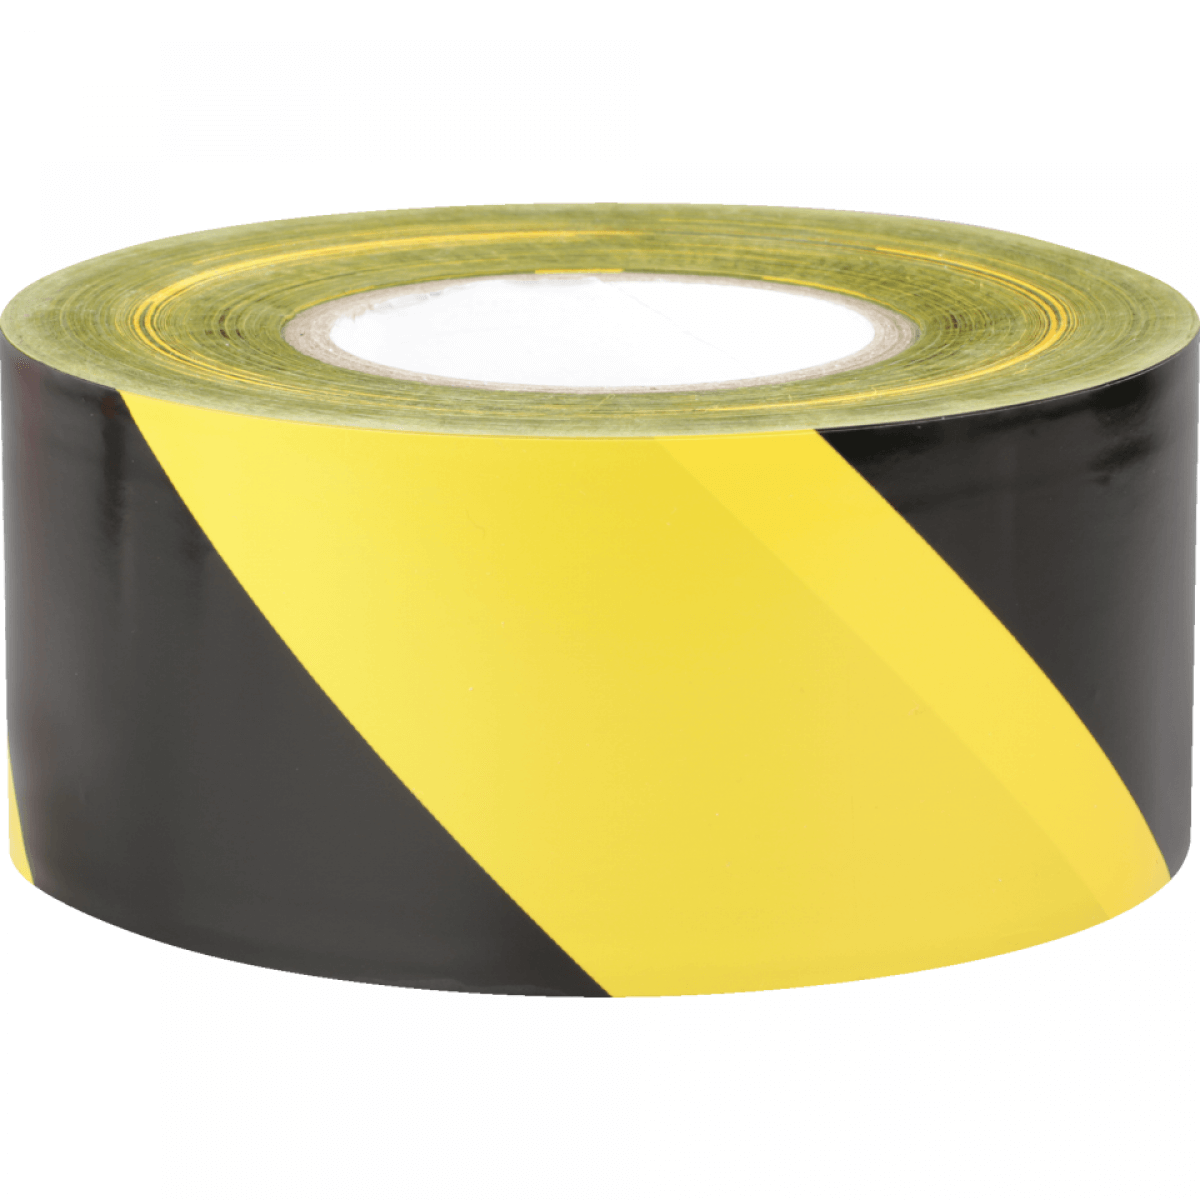 Absperrband Basic, gelb/schwarz schraffiert, Polyethylen, 75mm, 500m/Rolle, 500  m